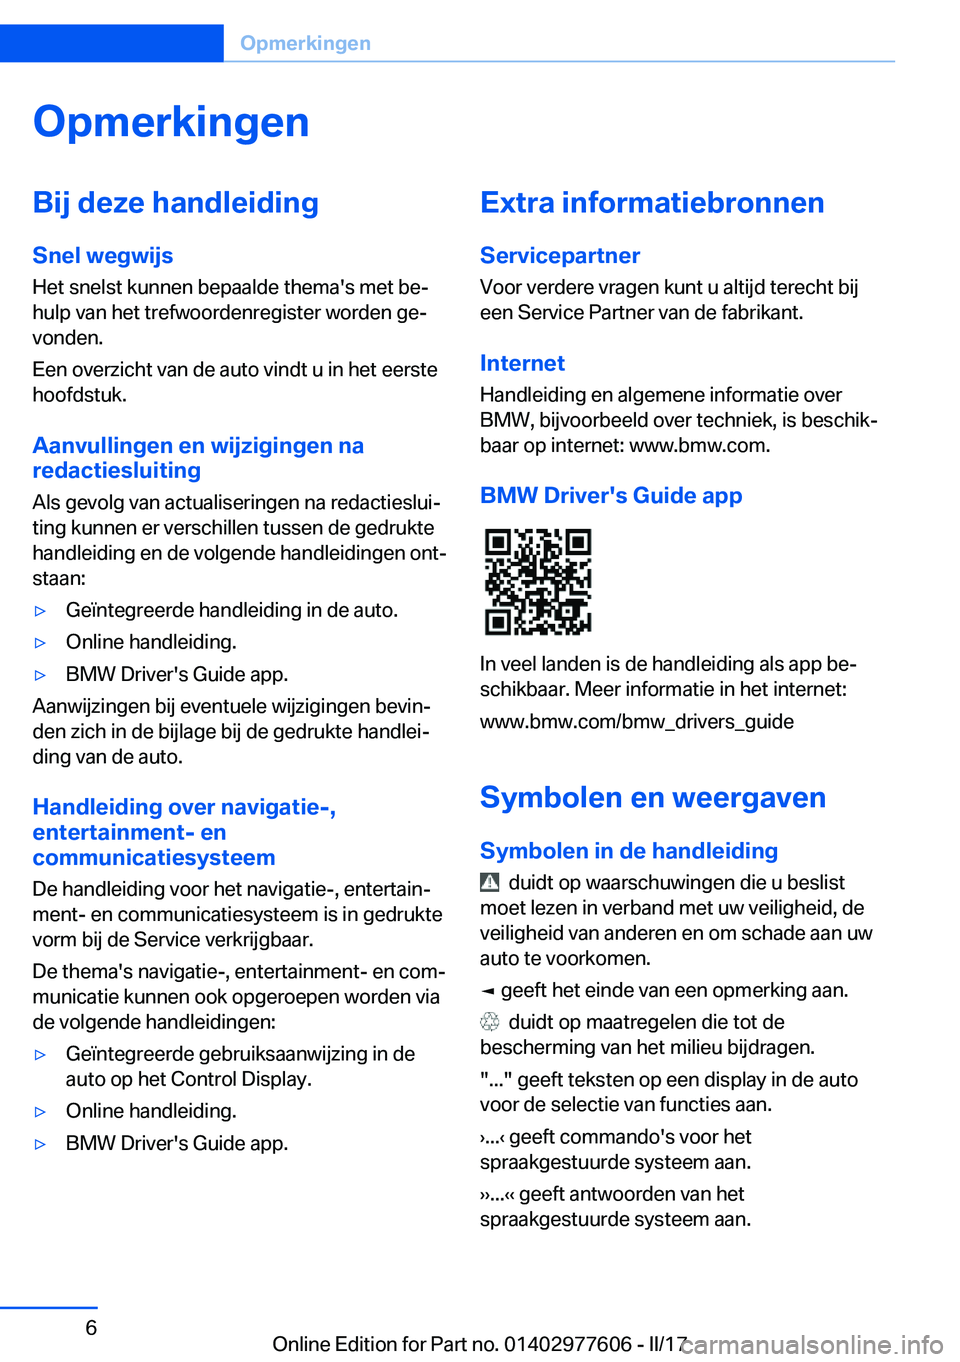 BMW X6 2017  Instructieboekjes (in Dutch) �O�p�m�e�r�k�i�n�g�e�n�B�i�j��d�e�z�e��h�a�n�d�l�e�i�d�i�n�g�S�n�e�l��w�e�g�w�i�j�s
�H�e�t� �s�n�e�l�s�t� �k�u�n�n�e�n� �b�e�p�a�a�l�d�e� �t�h�e�m�a�'�s� �m�e�t� �b�ej
�h�u�l�p� �v�a�n� �h�e�t